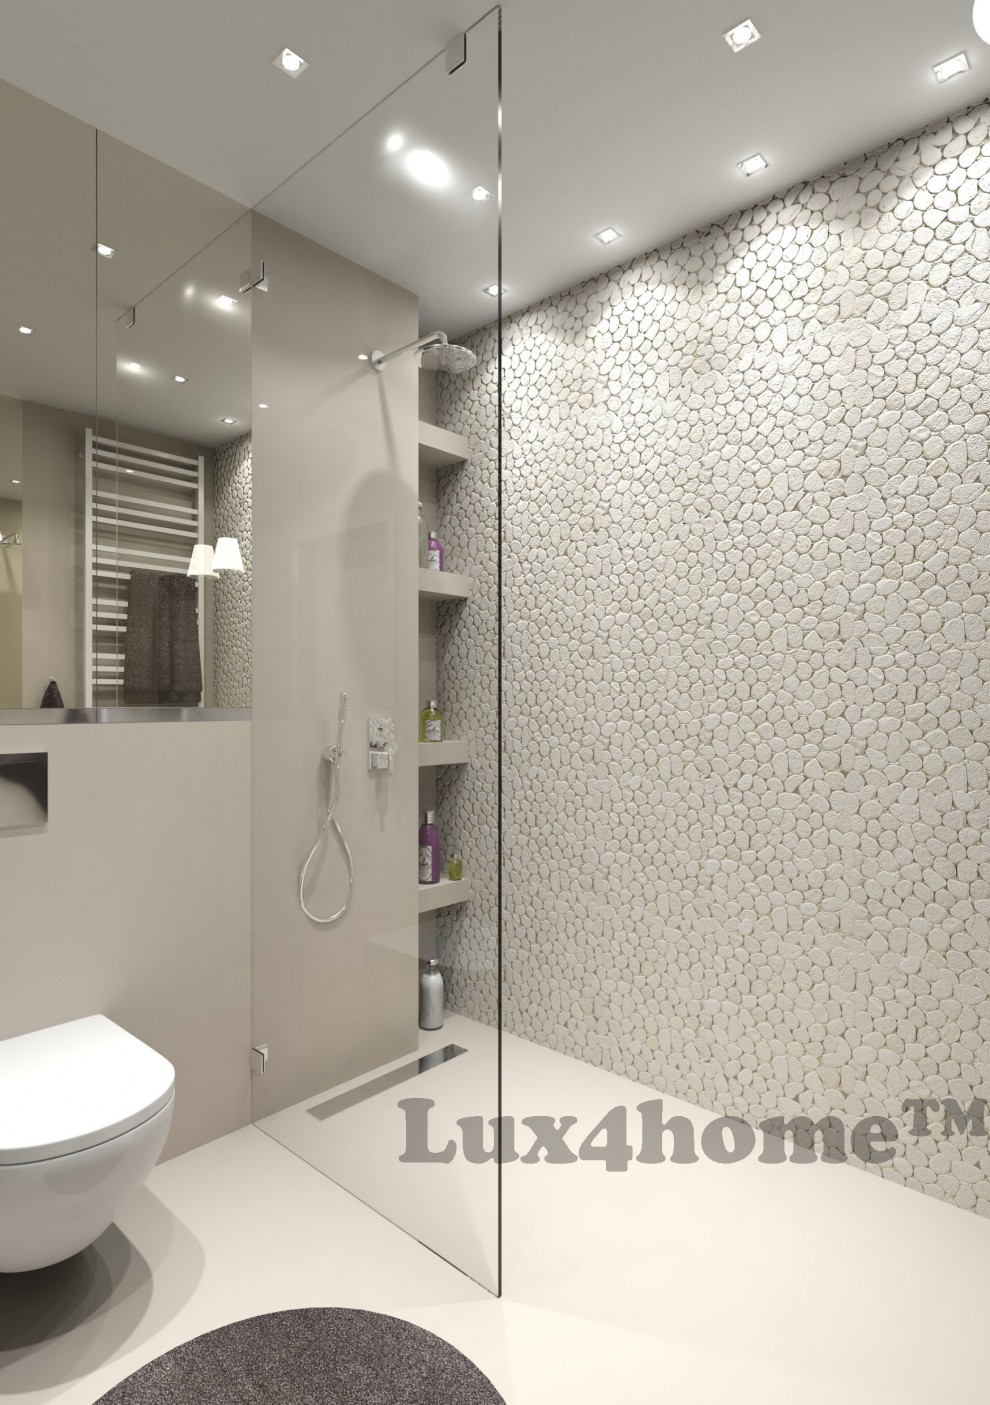 Mozaika kamienna Białe otoczaki - producent - otoczaki pod prysznicem